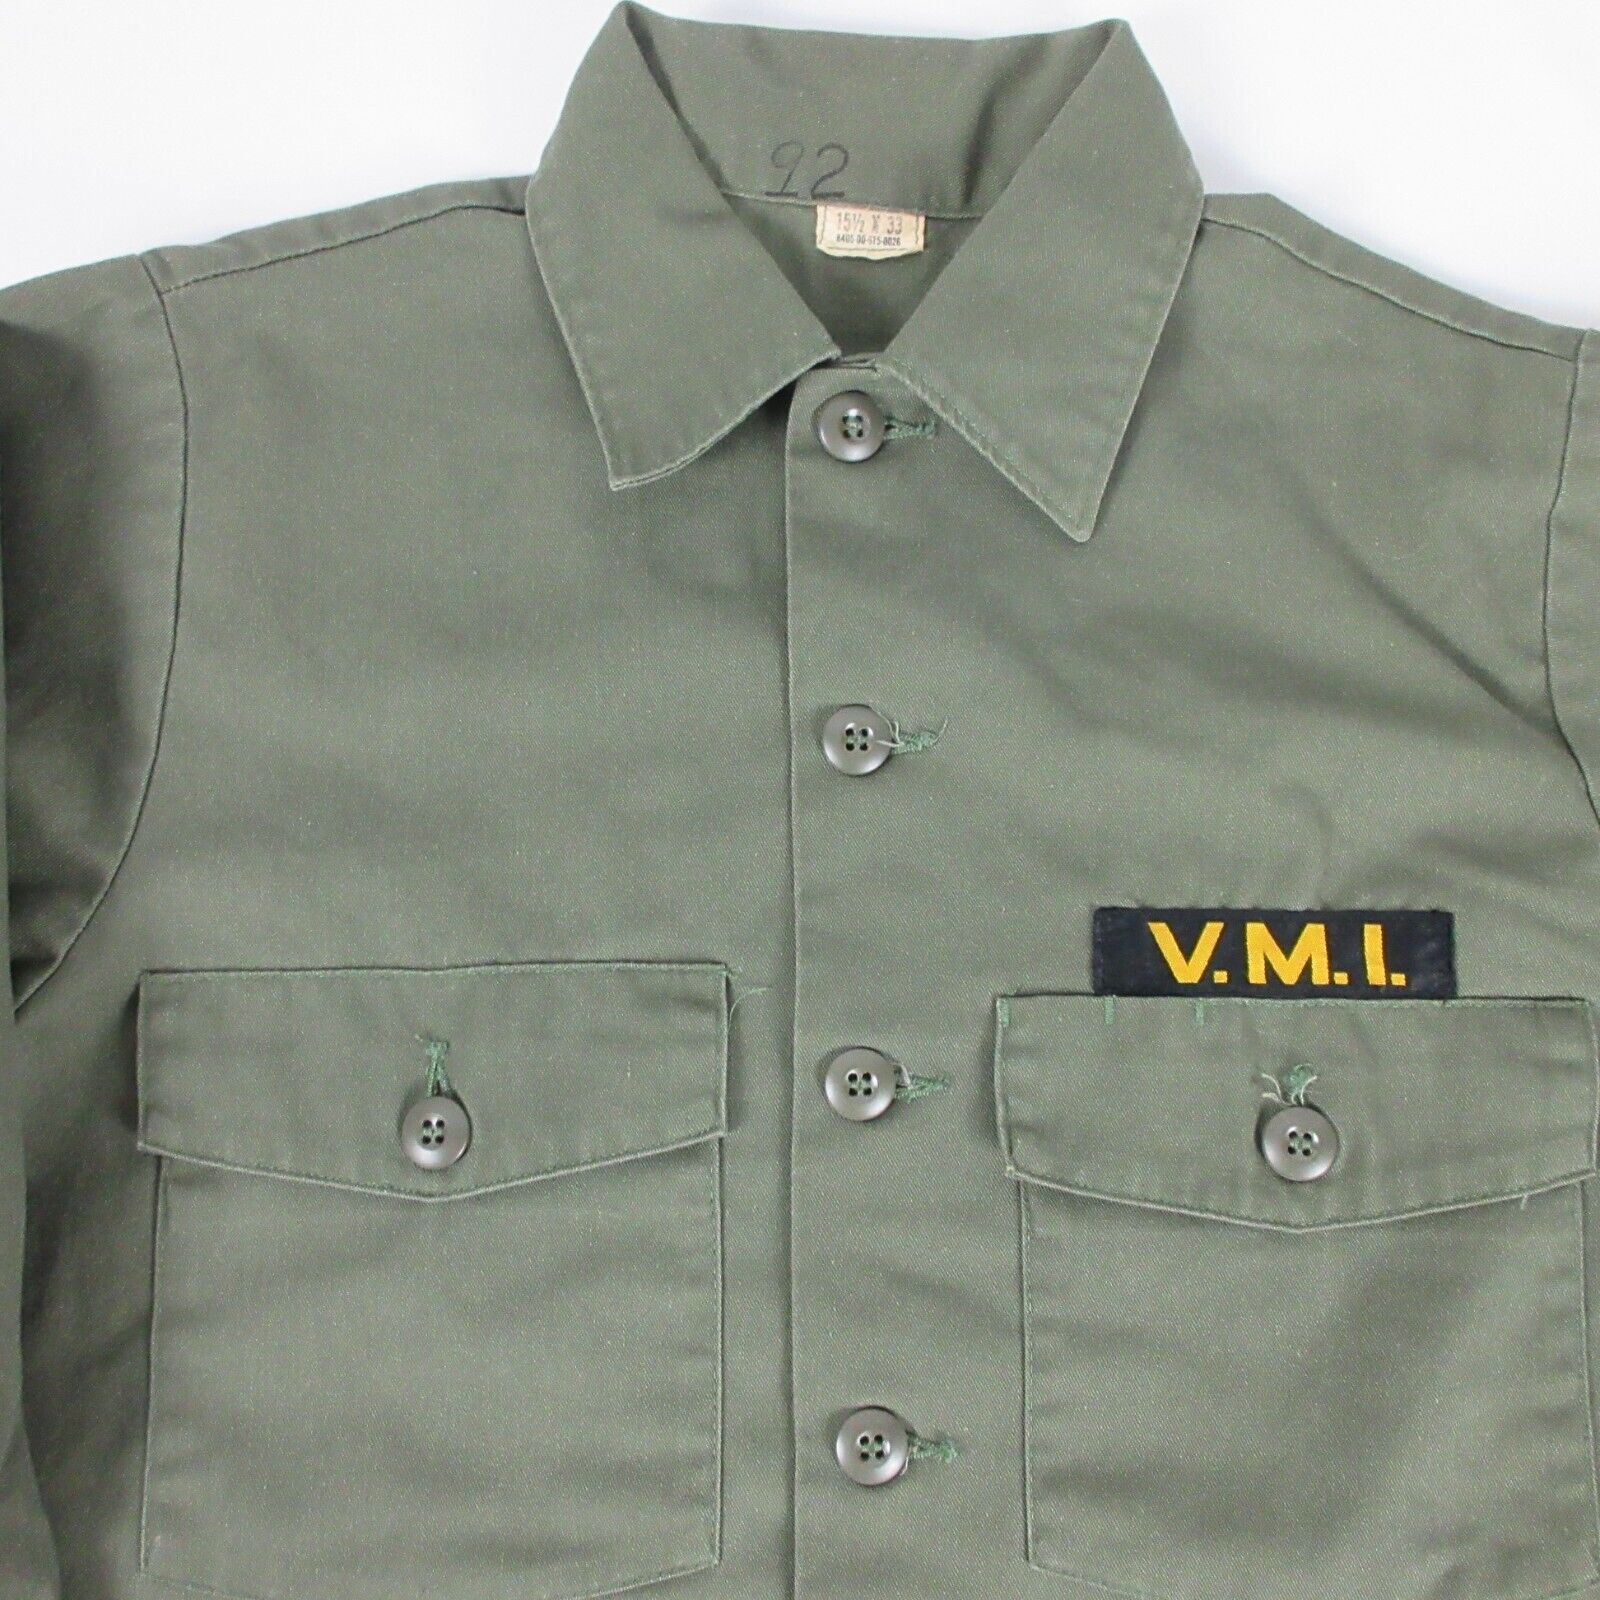 Vintage Military Shirt Men Large Utility OG 507 Green Army Virginia V.M.I.